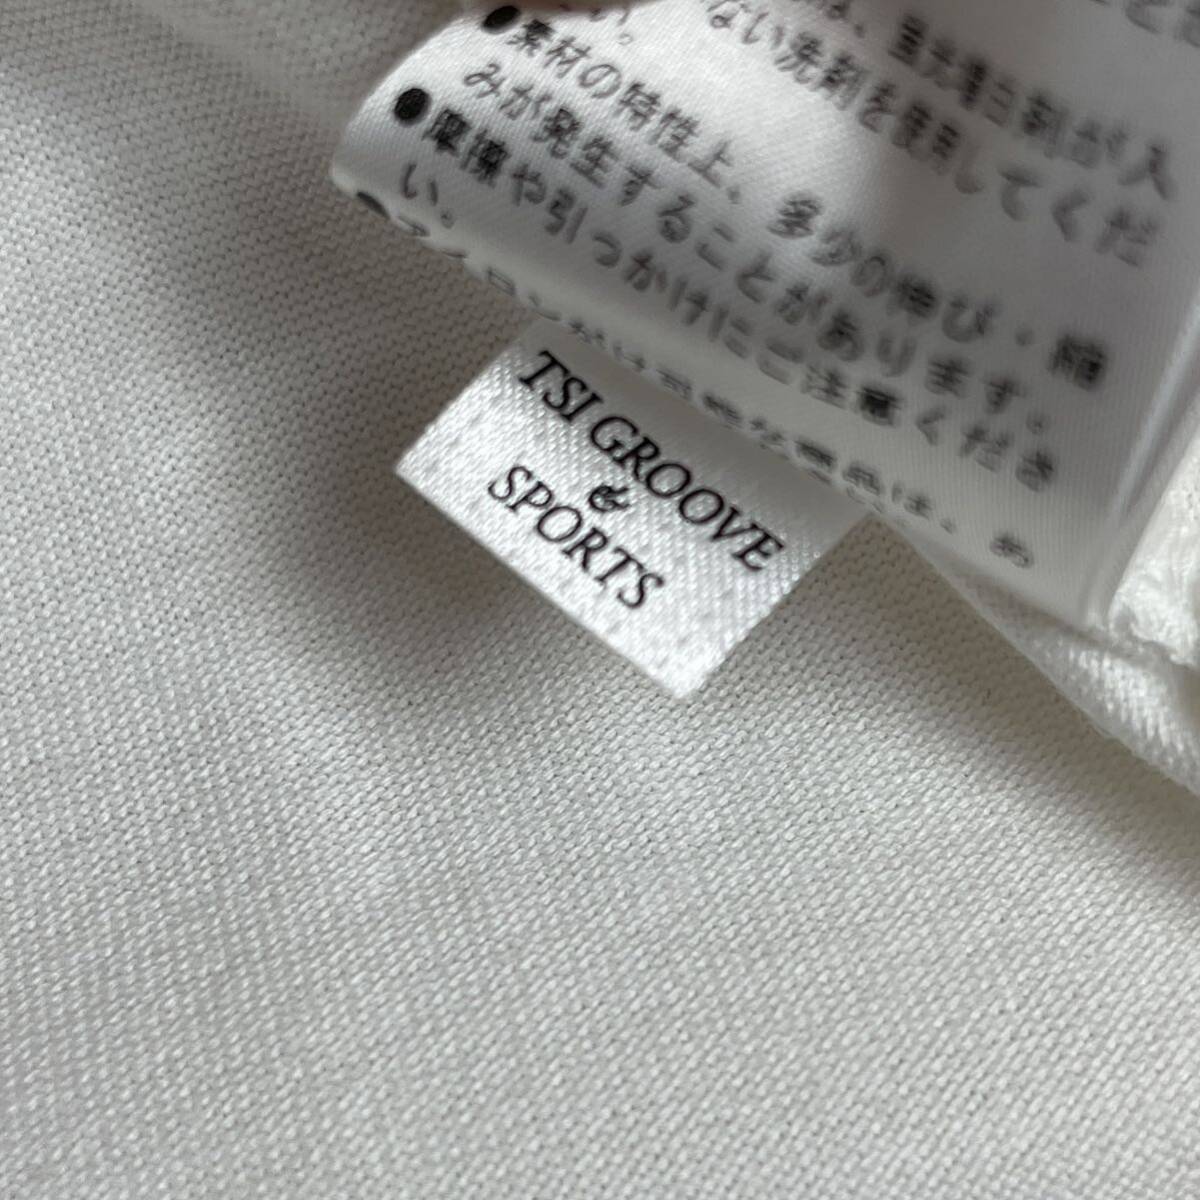 新品正規品 PEARLYGATES マスターバニー モックネック 半袖ポロシャツ 5(L) ゴルフ モックネックシャツ